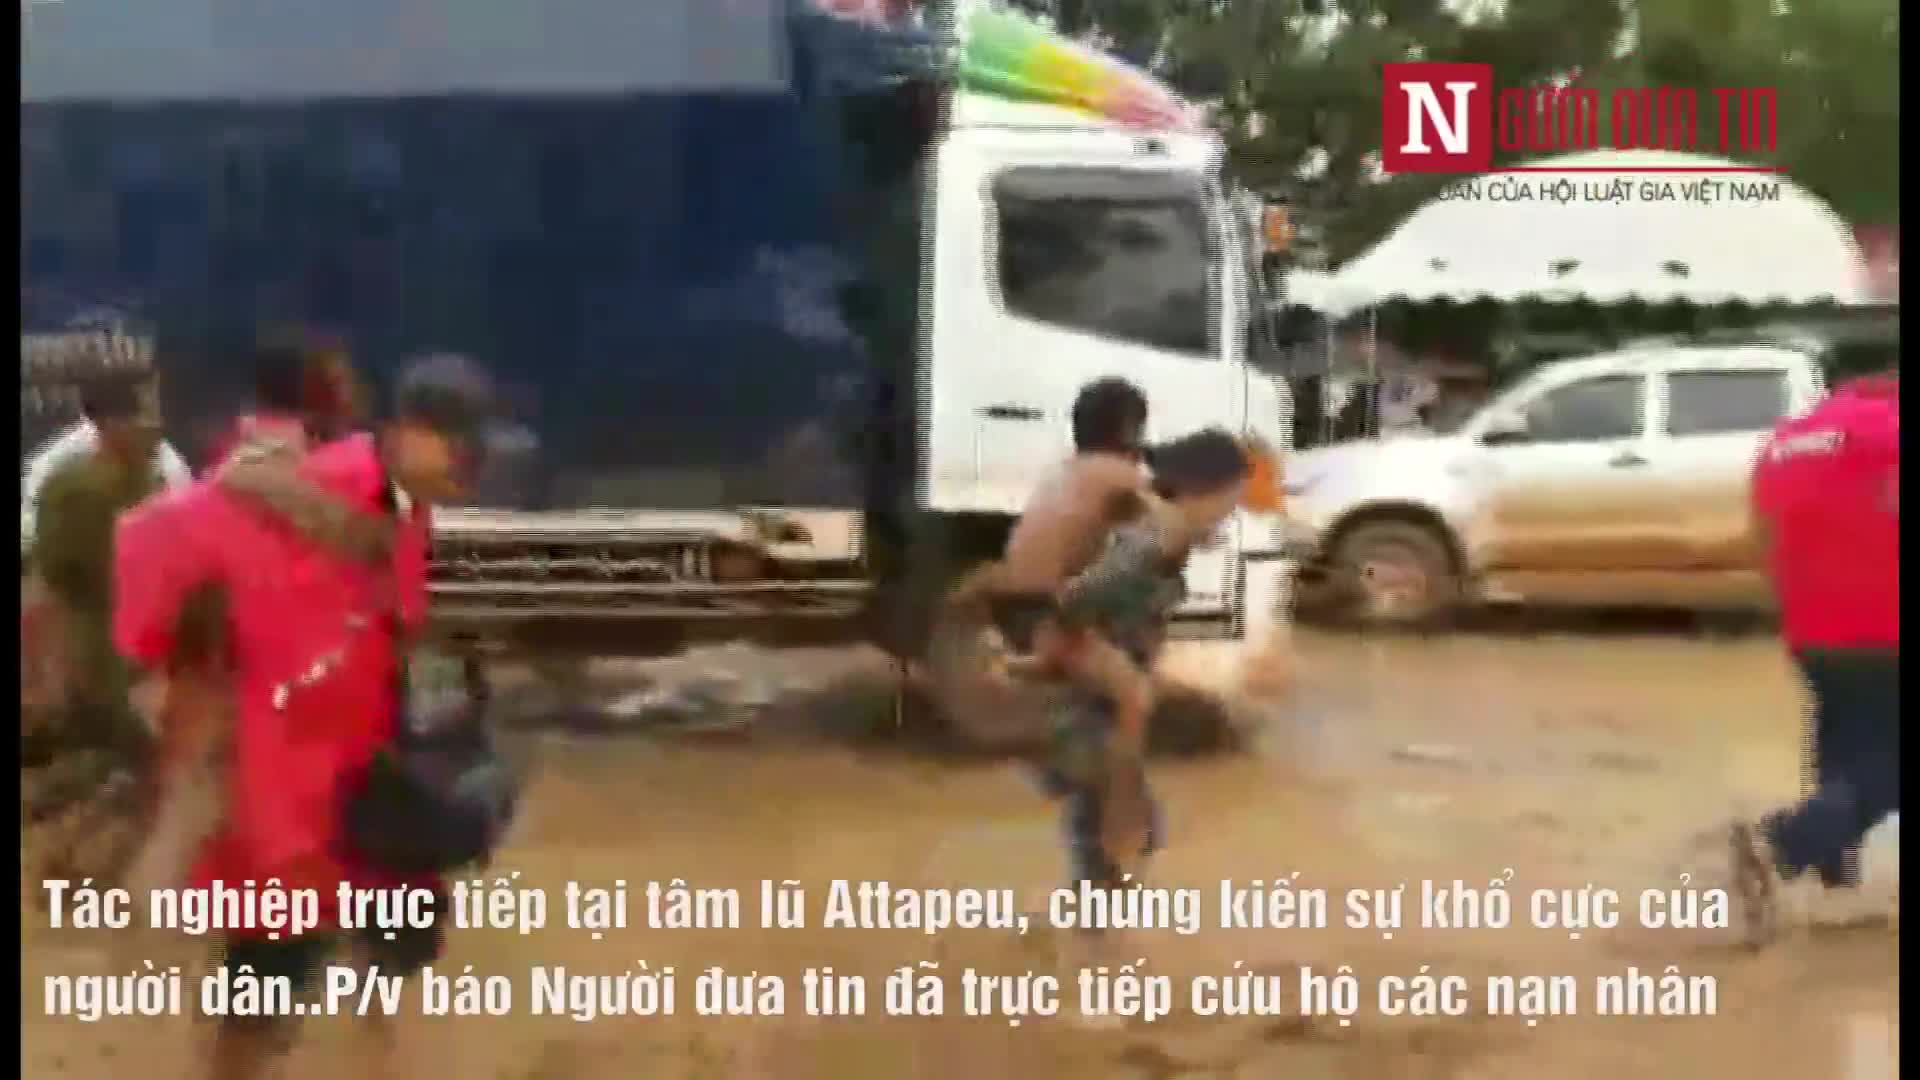 Video PV báo Người đưa tin cùng cứu hộ nạn nhân vụ vỡ đập thủy điện tại Lào